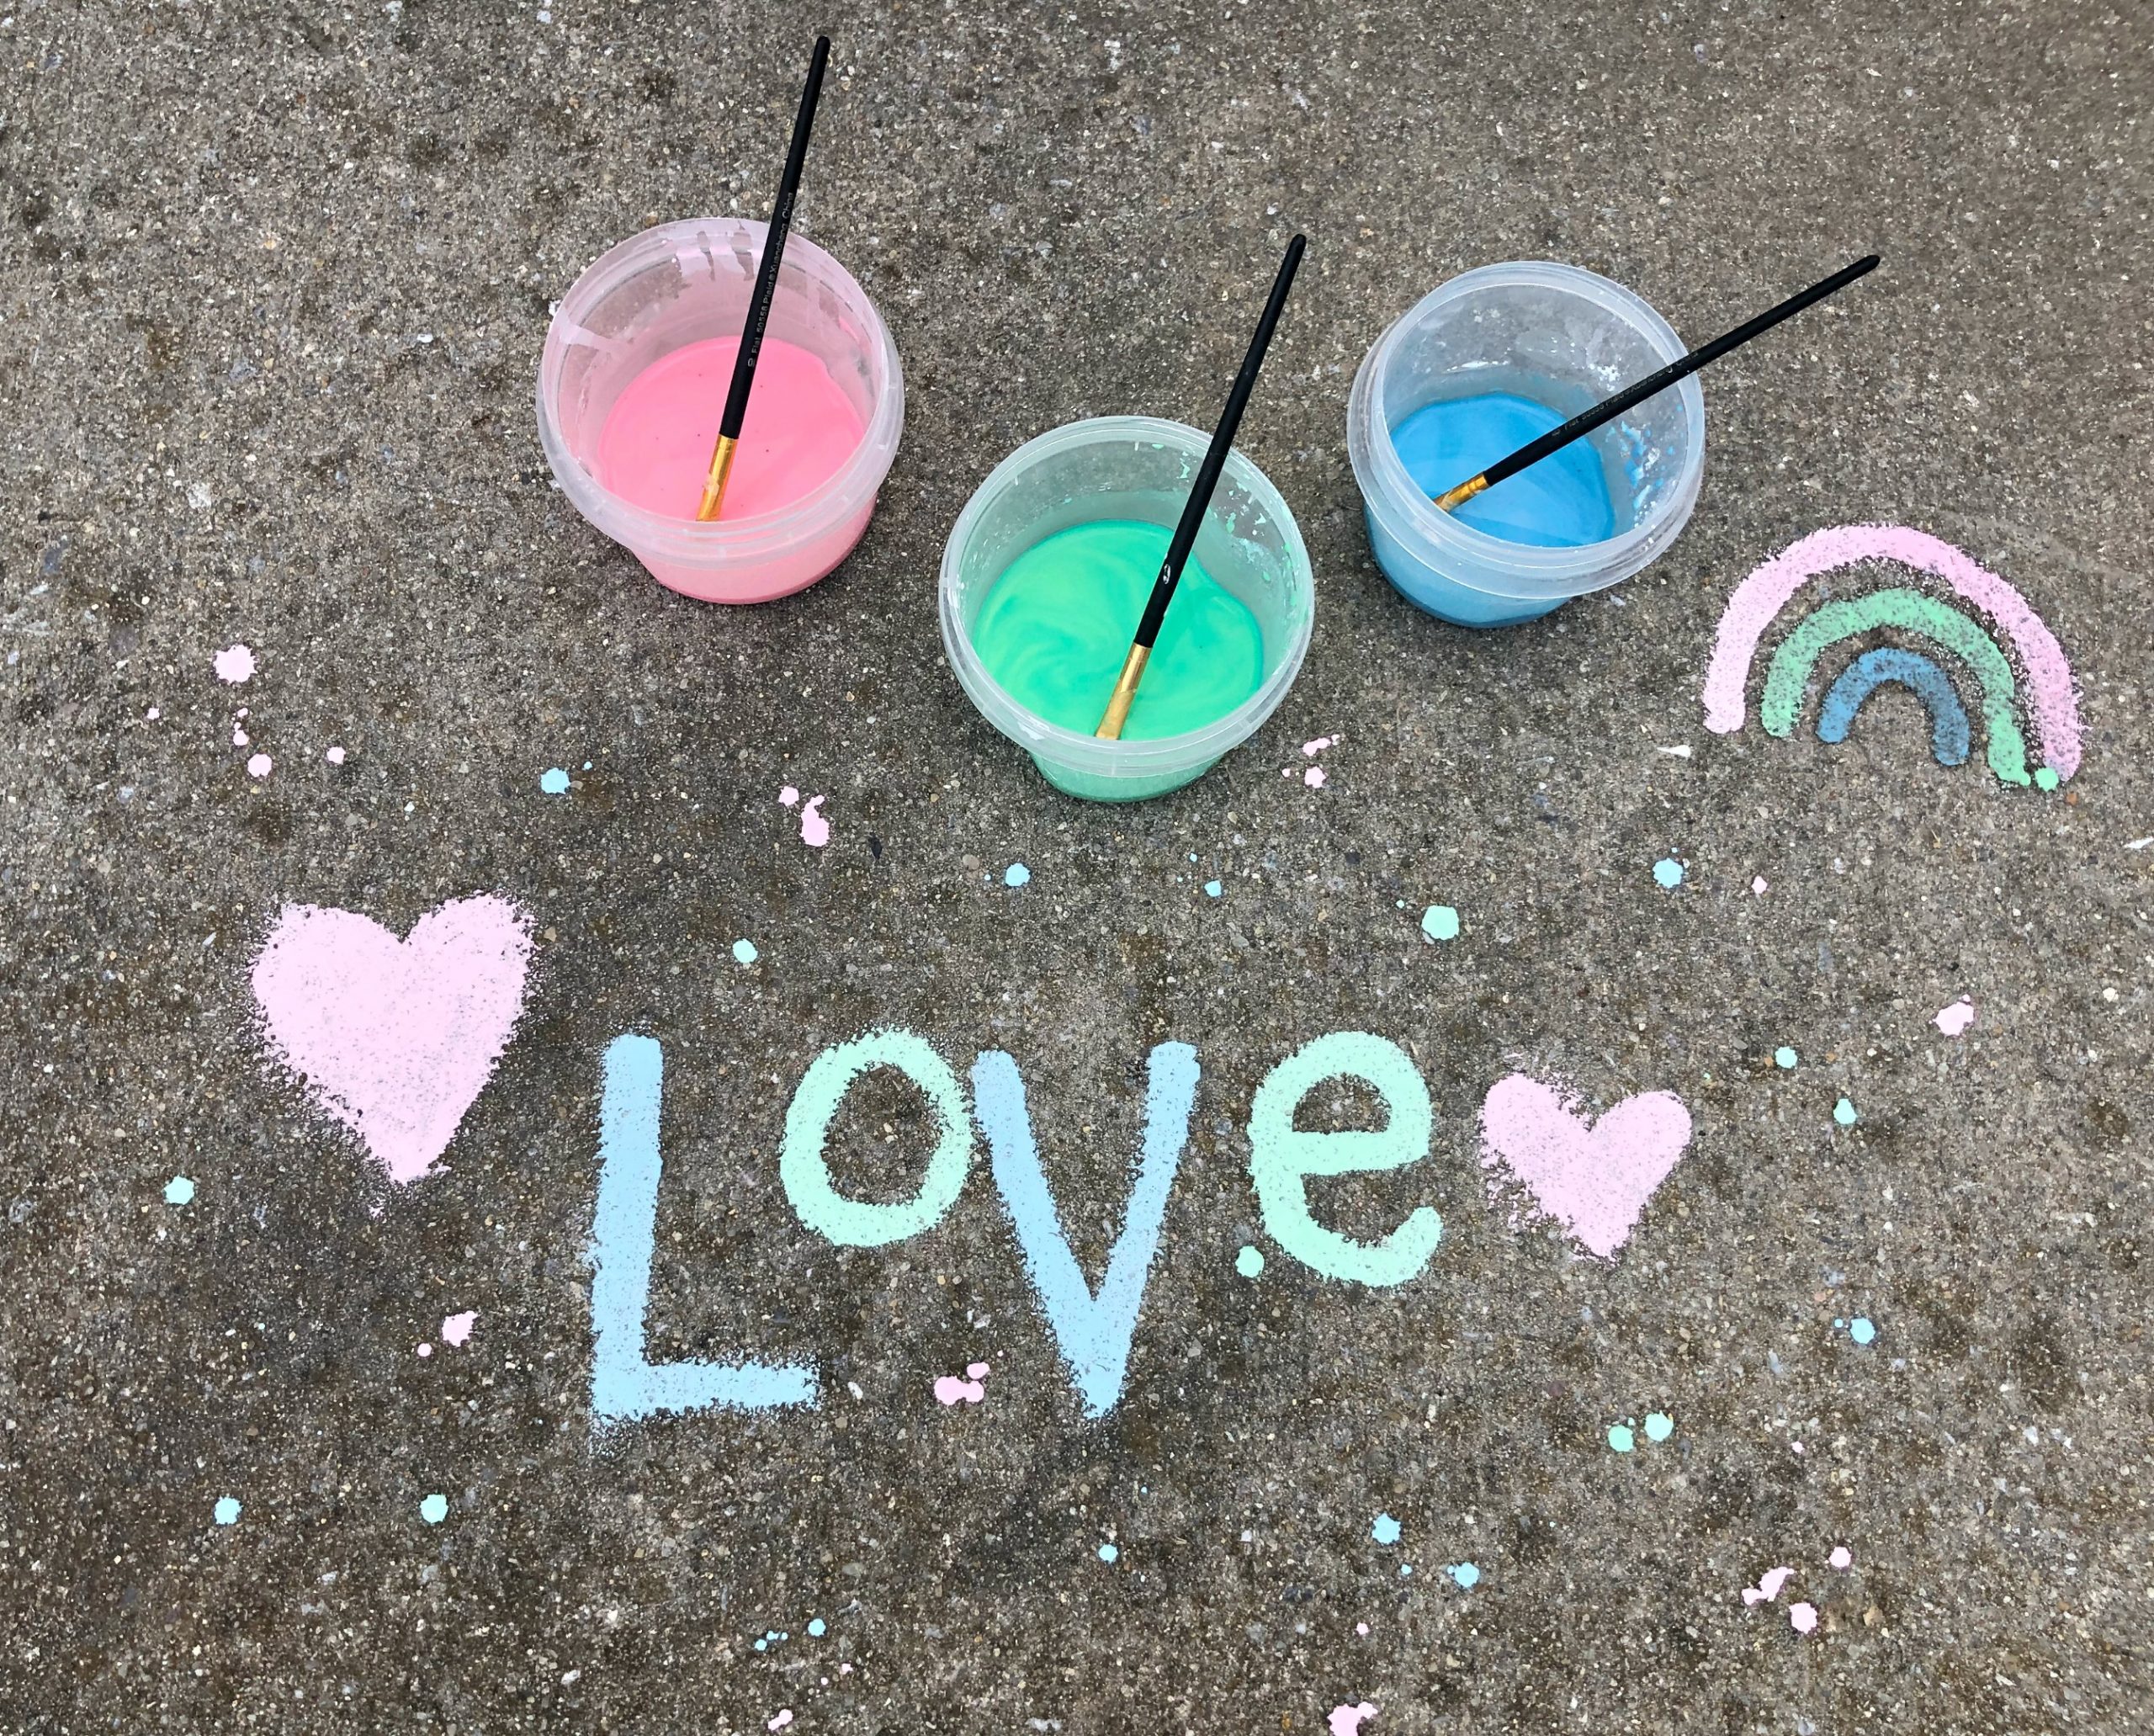 DIY Sidewalk Chalk Paint